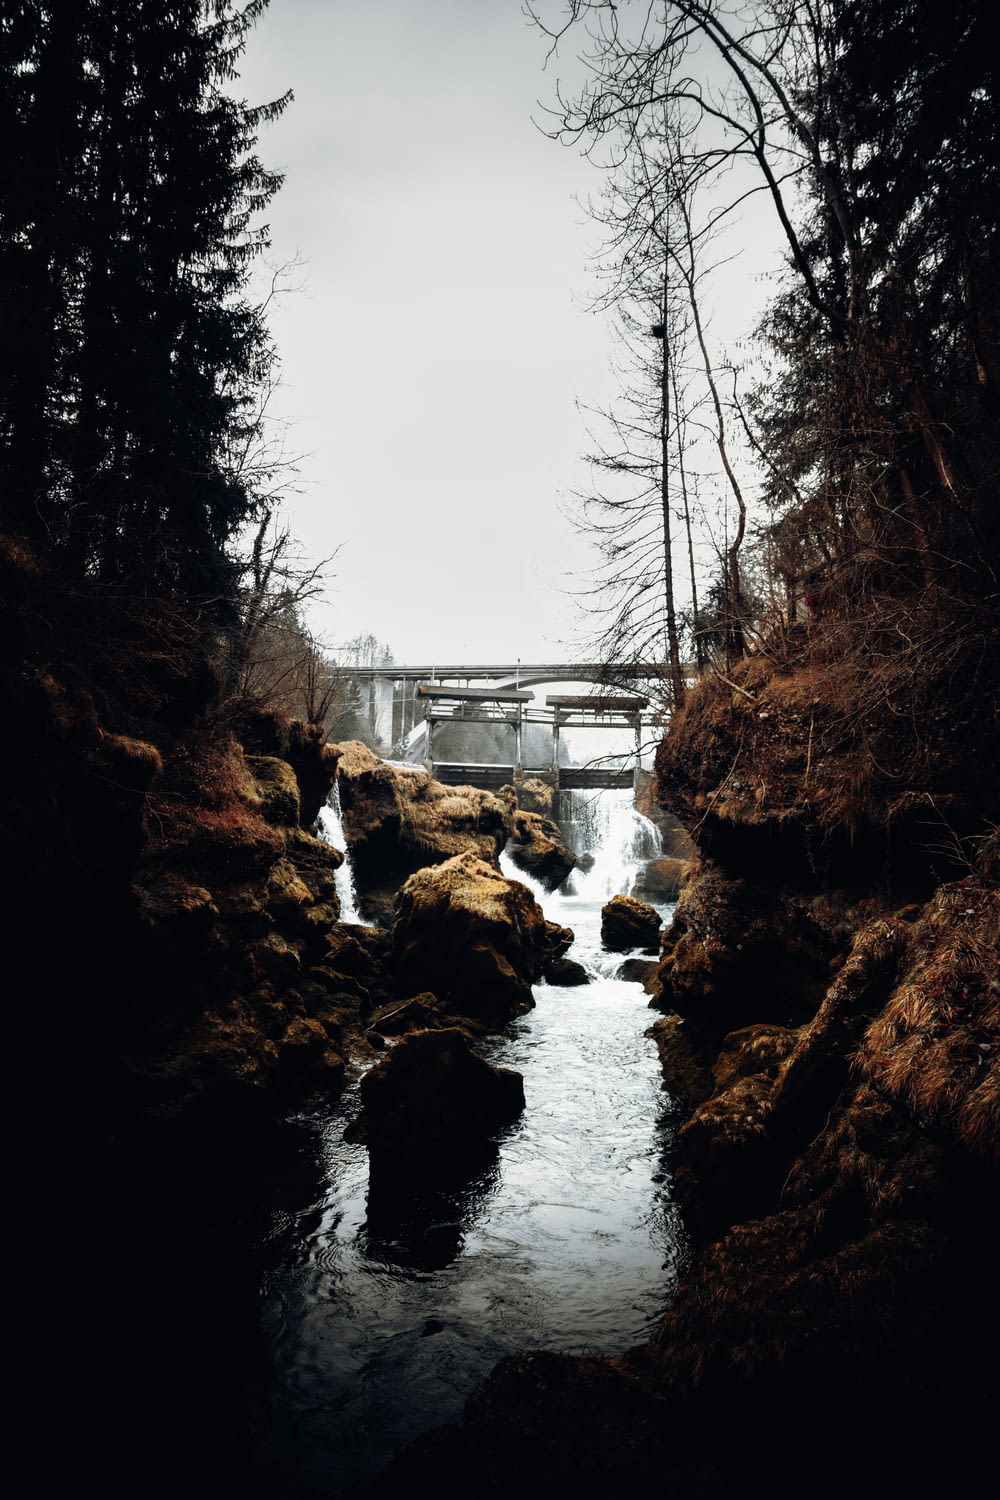 bridge over river between bare trees